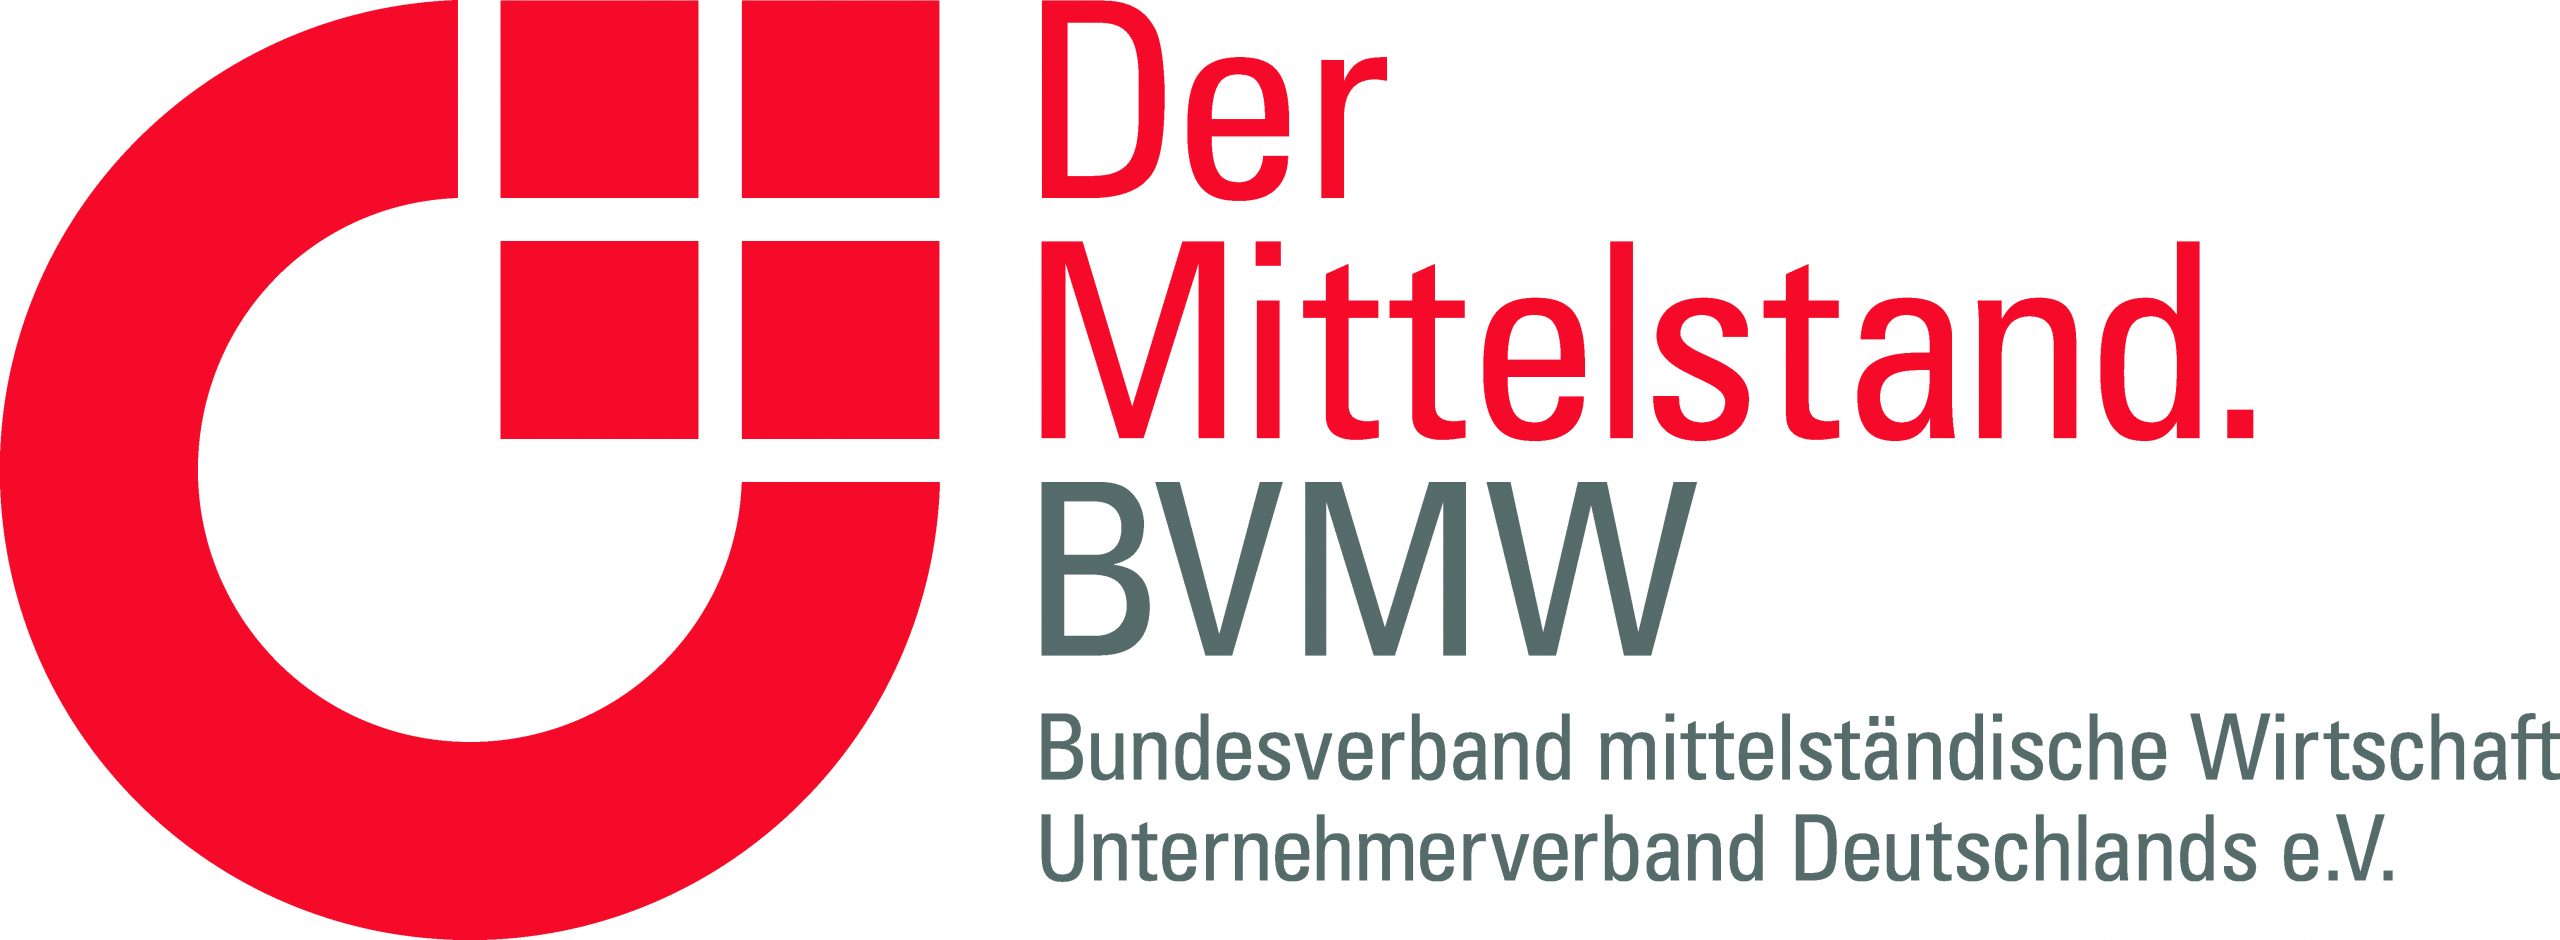 BVMW - Bundesverband mittelständische Wirtschaft, Unternehmerverband Deutschlands e.V. 